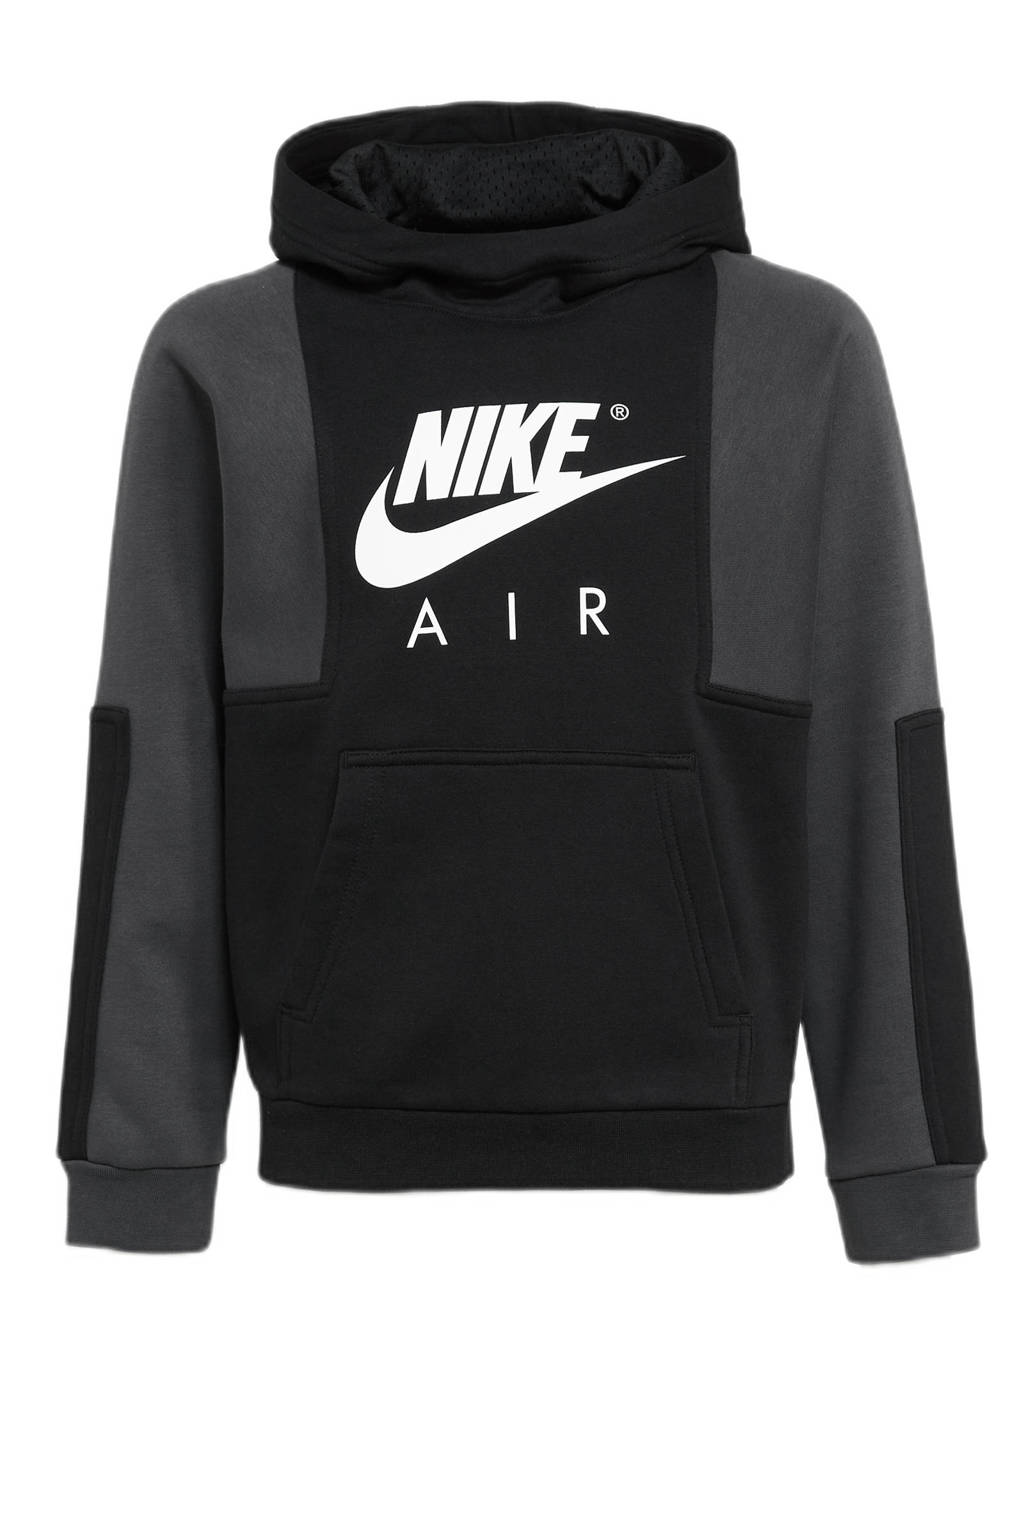 Nike trui met logo zwart/grijs, Zwart/grijs